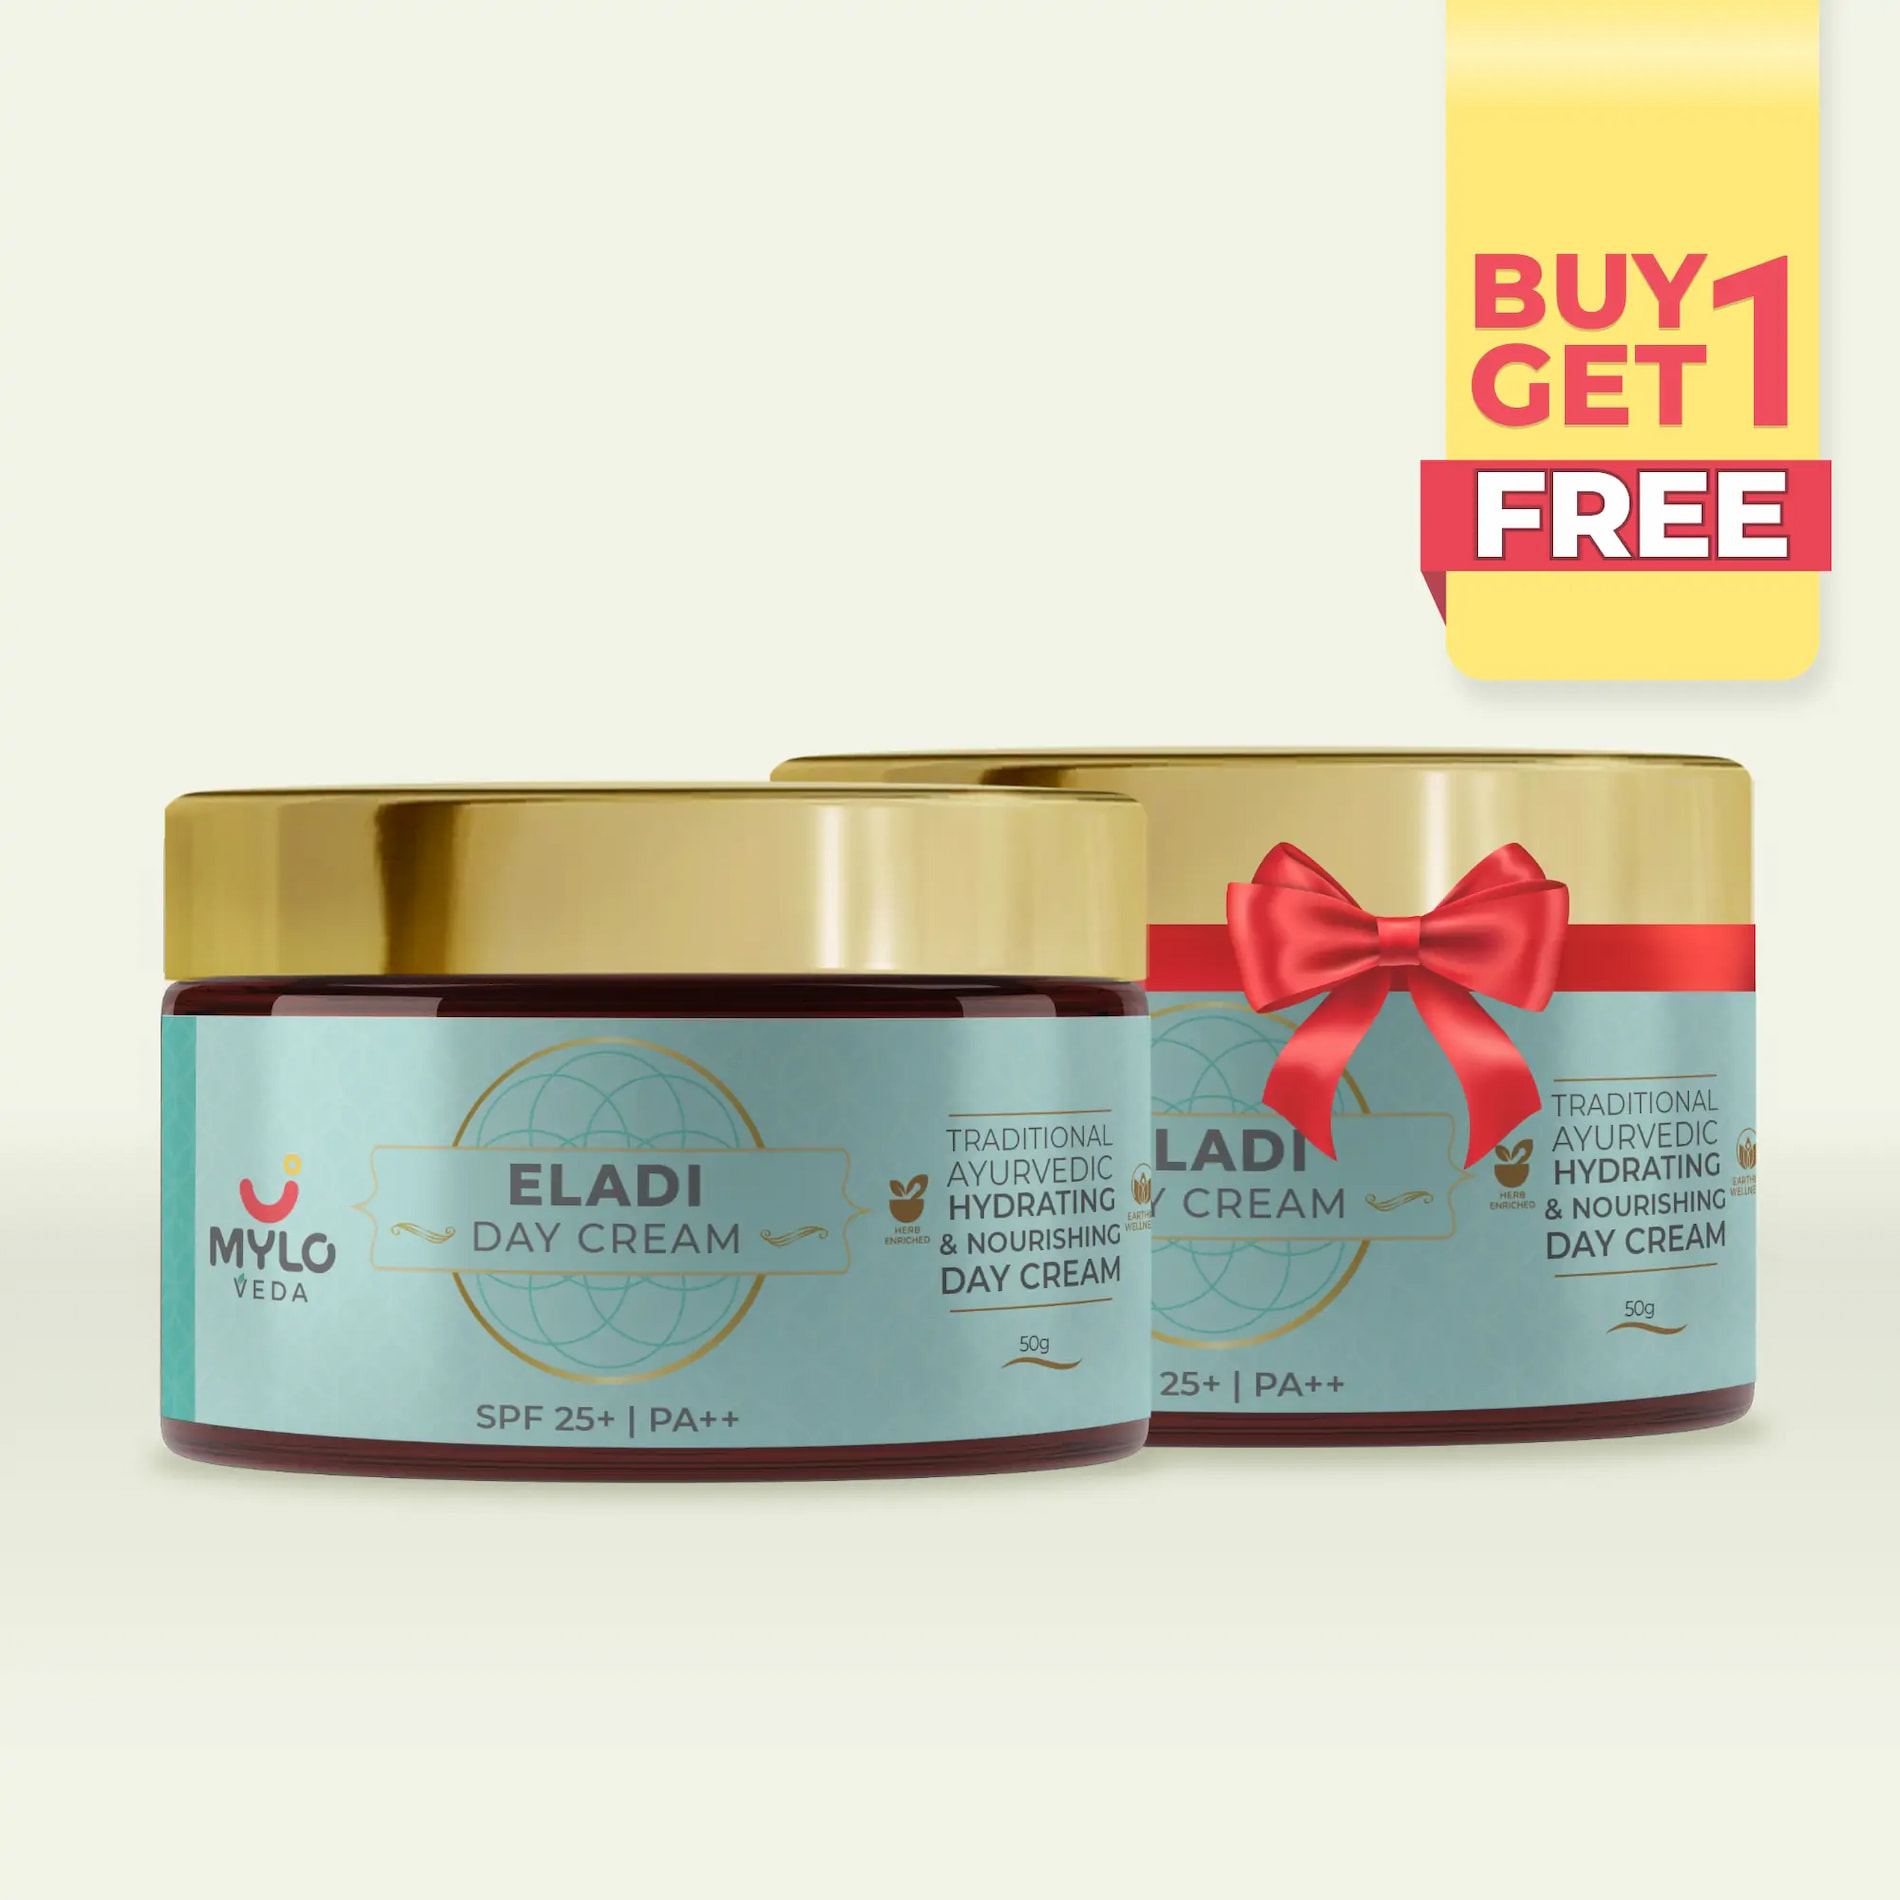 Eladi Day Cream 50g - Buy 1 Get 1 FREE